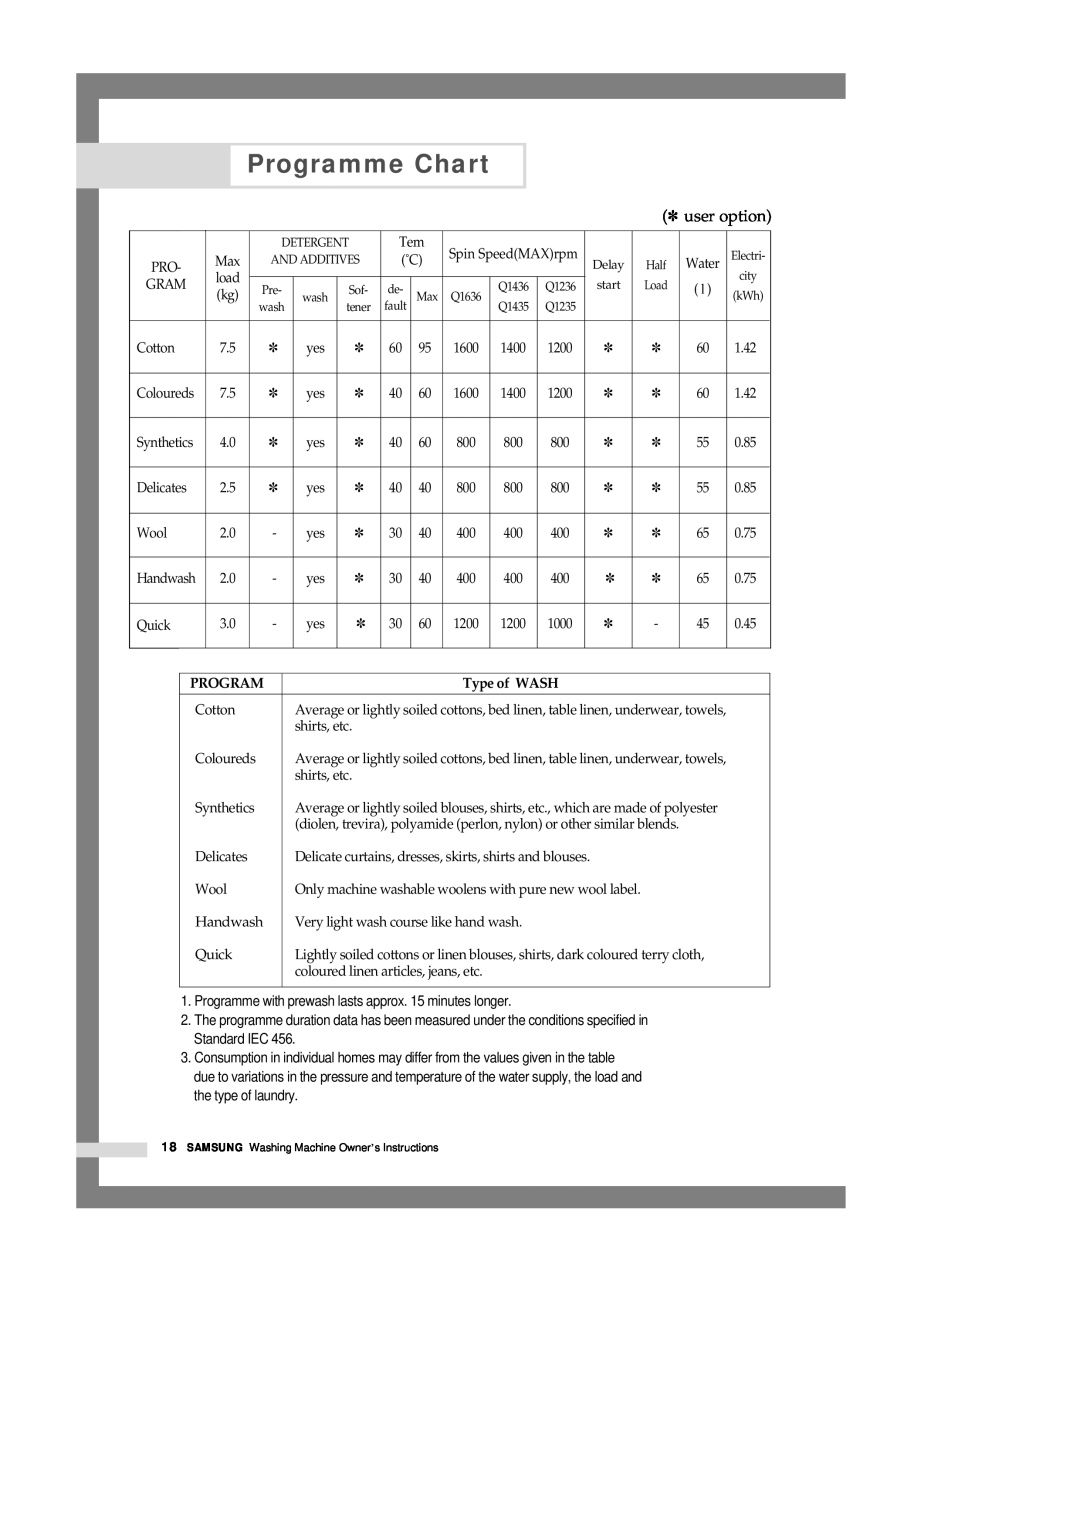 Samsung Q1435VGW1-XEE, Q1435VGW1/YLE, Q1435VGW1/XEF, Q1636VGW/XEF, Q1435VGW1-XEF Programme Chart, user option, Type of WASH 